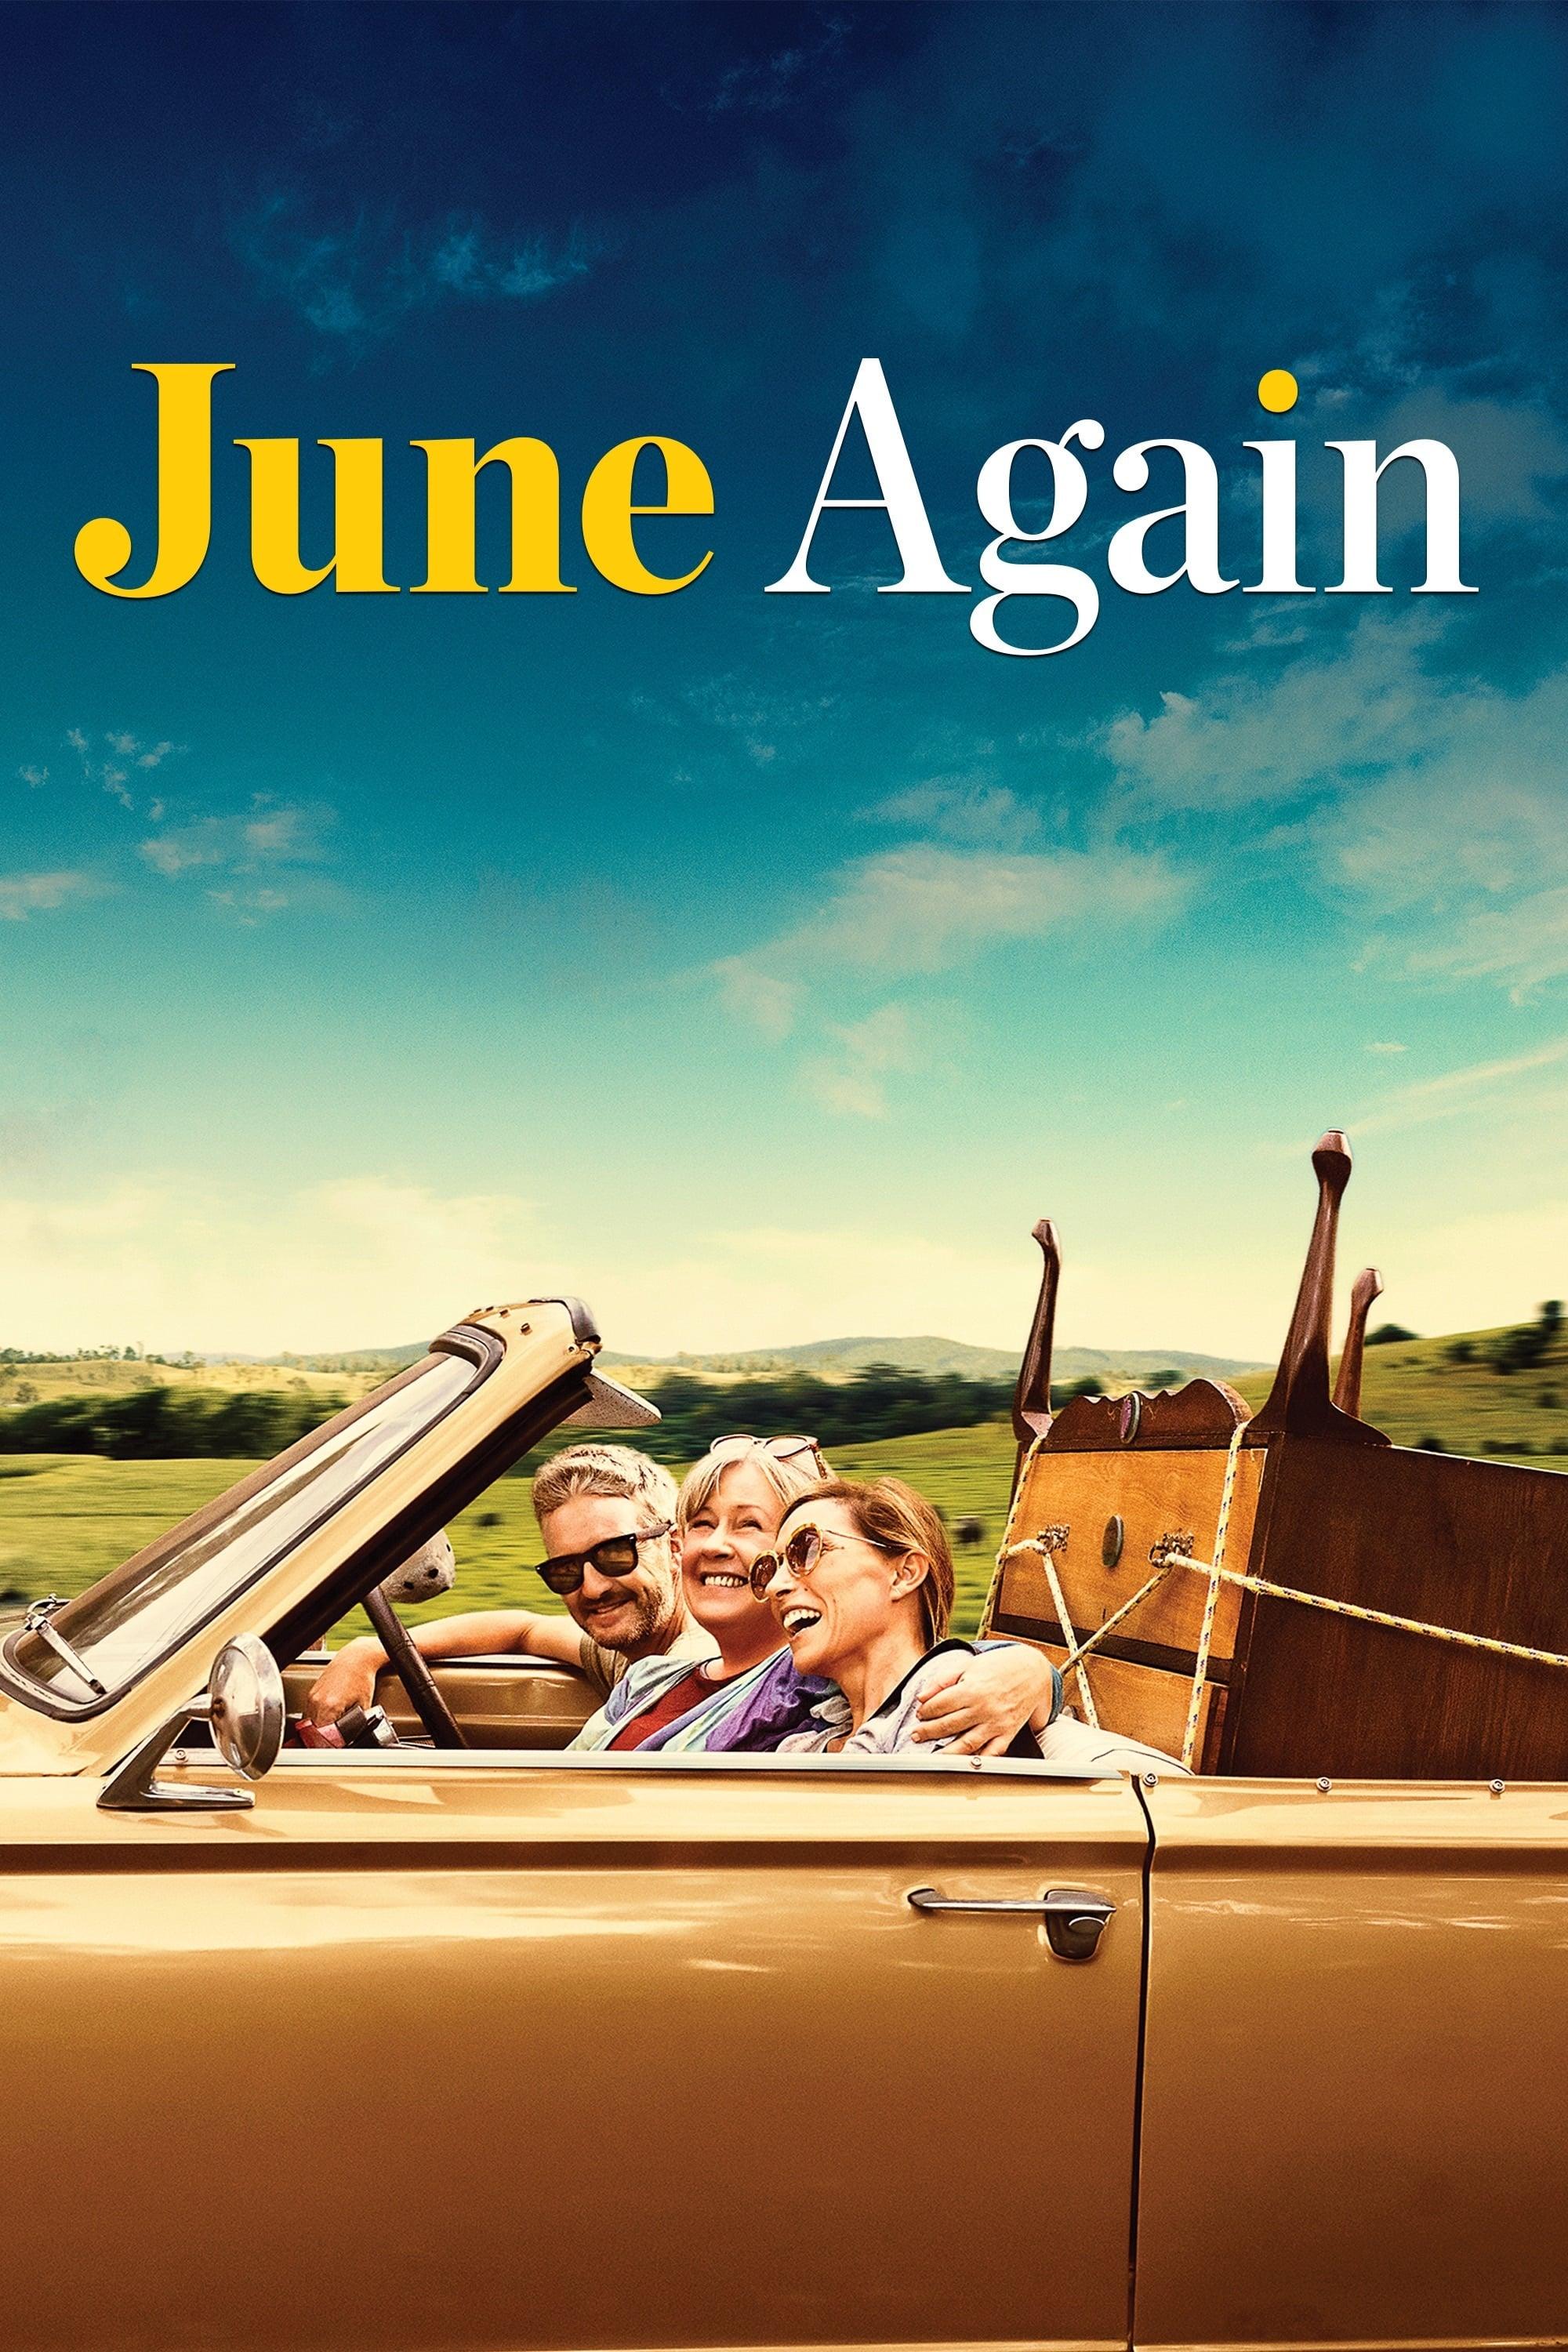 June Again poster